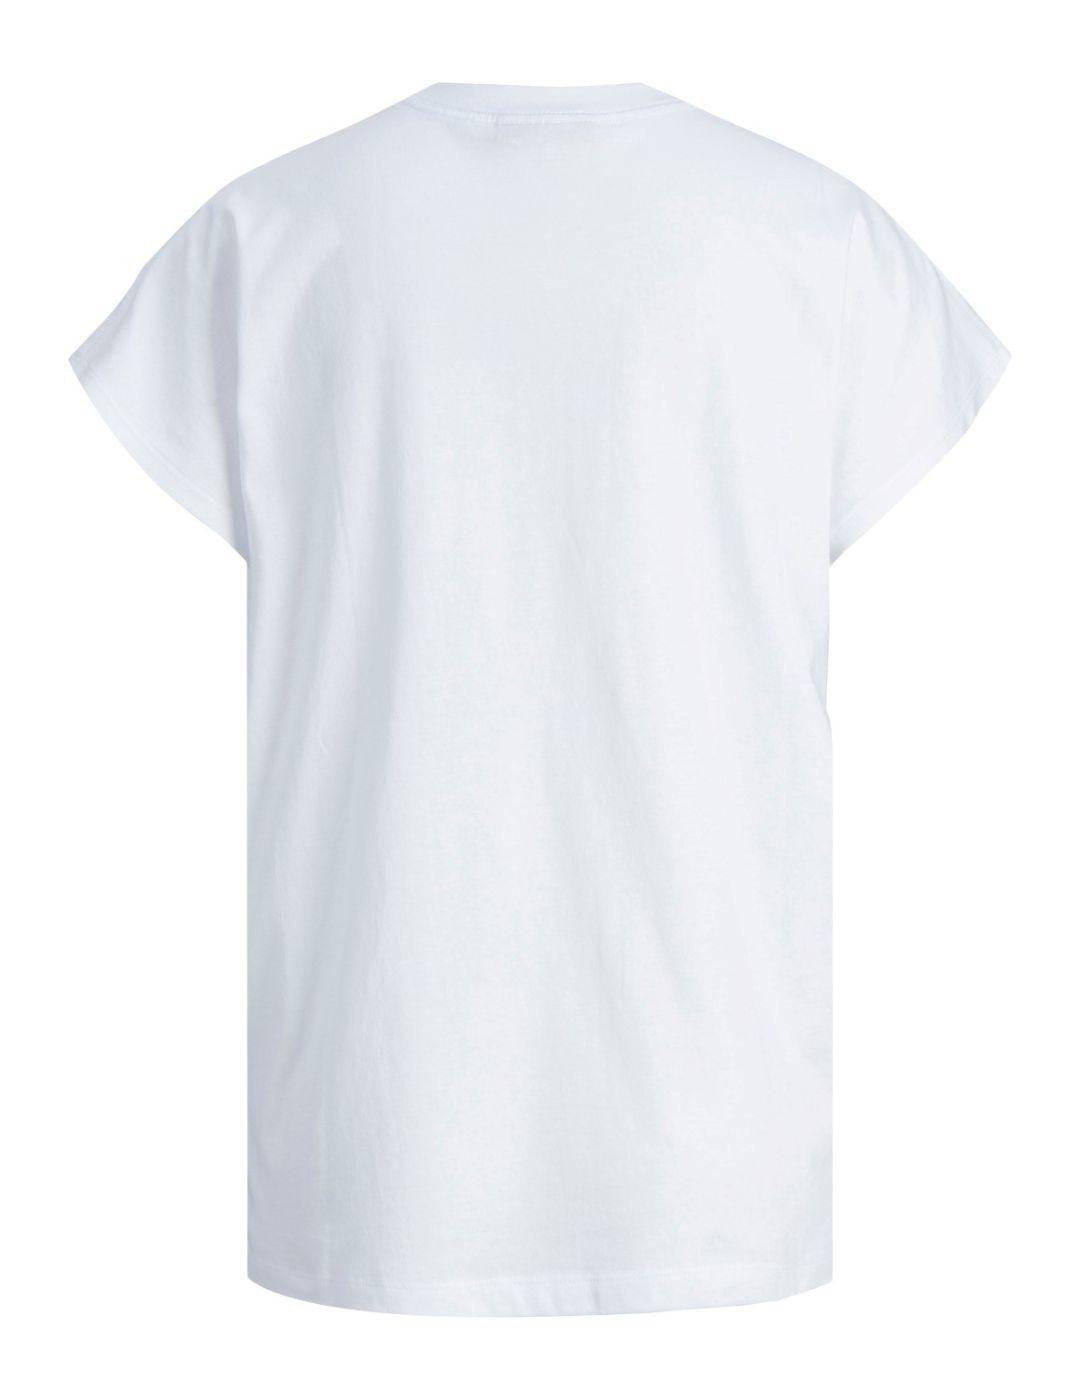 Camiseta JJXX astrid blanca para mujer -b